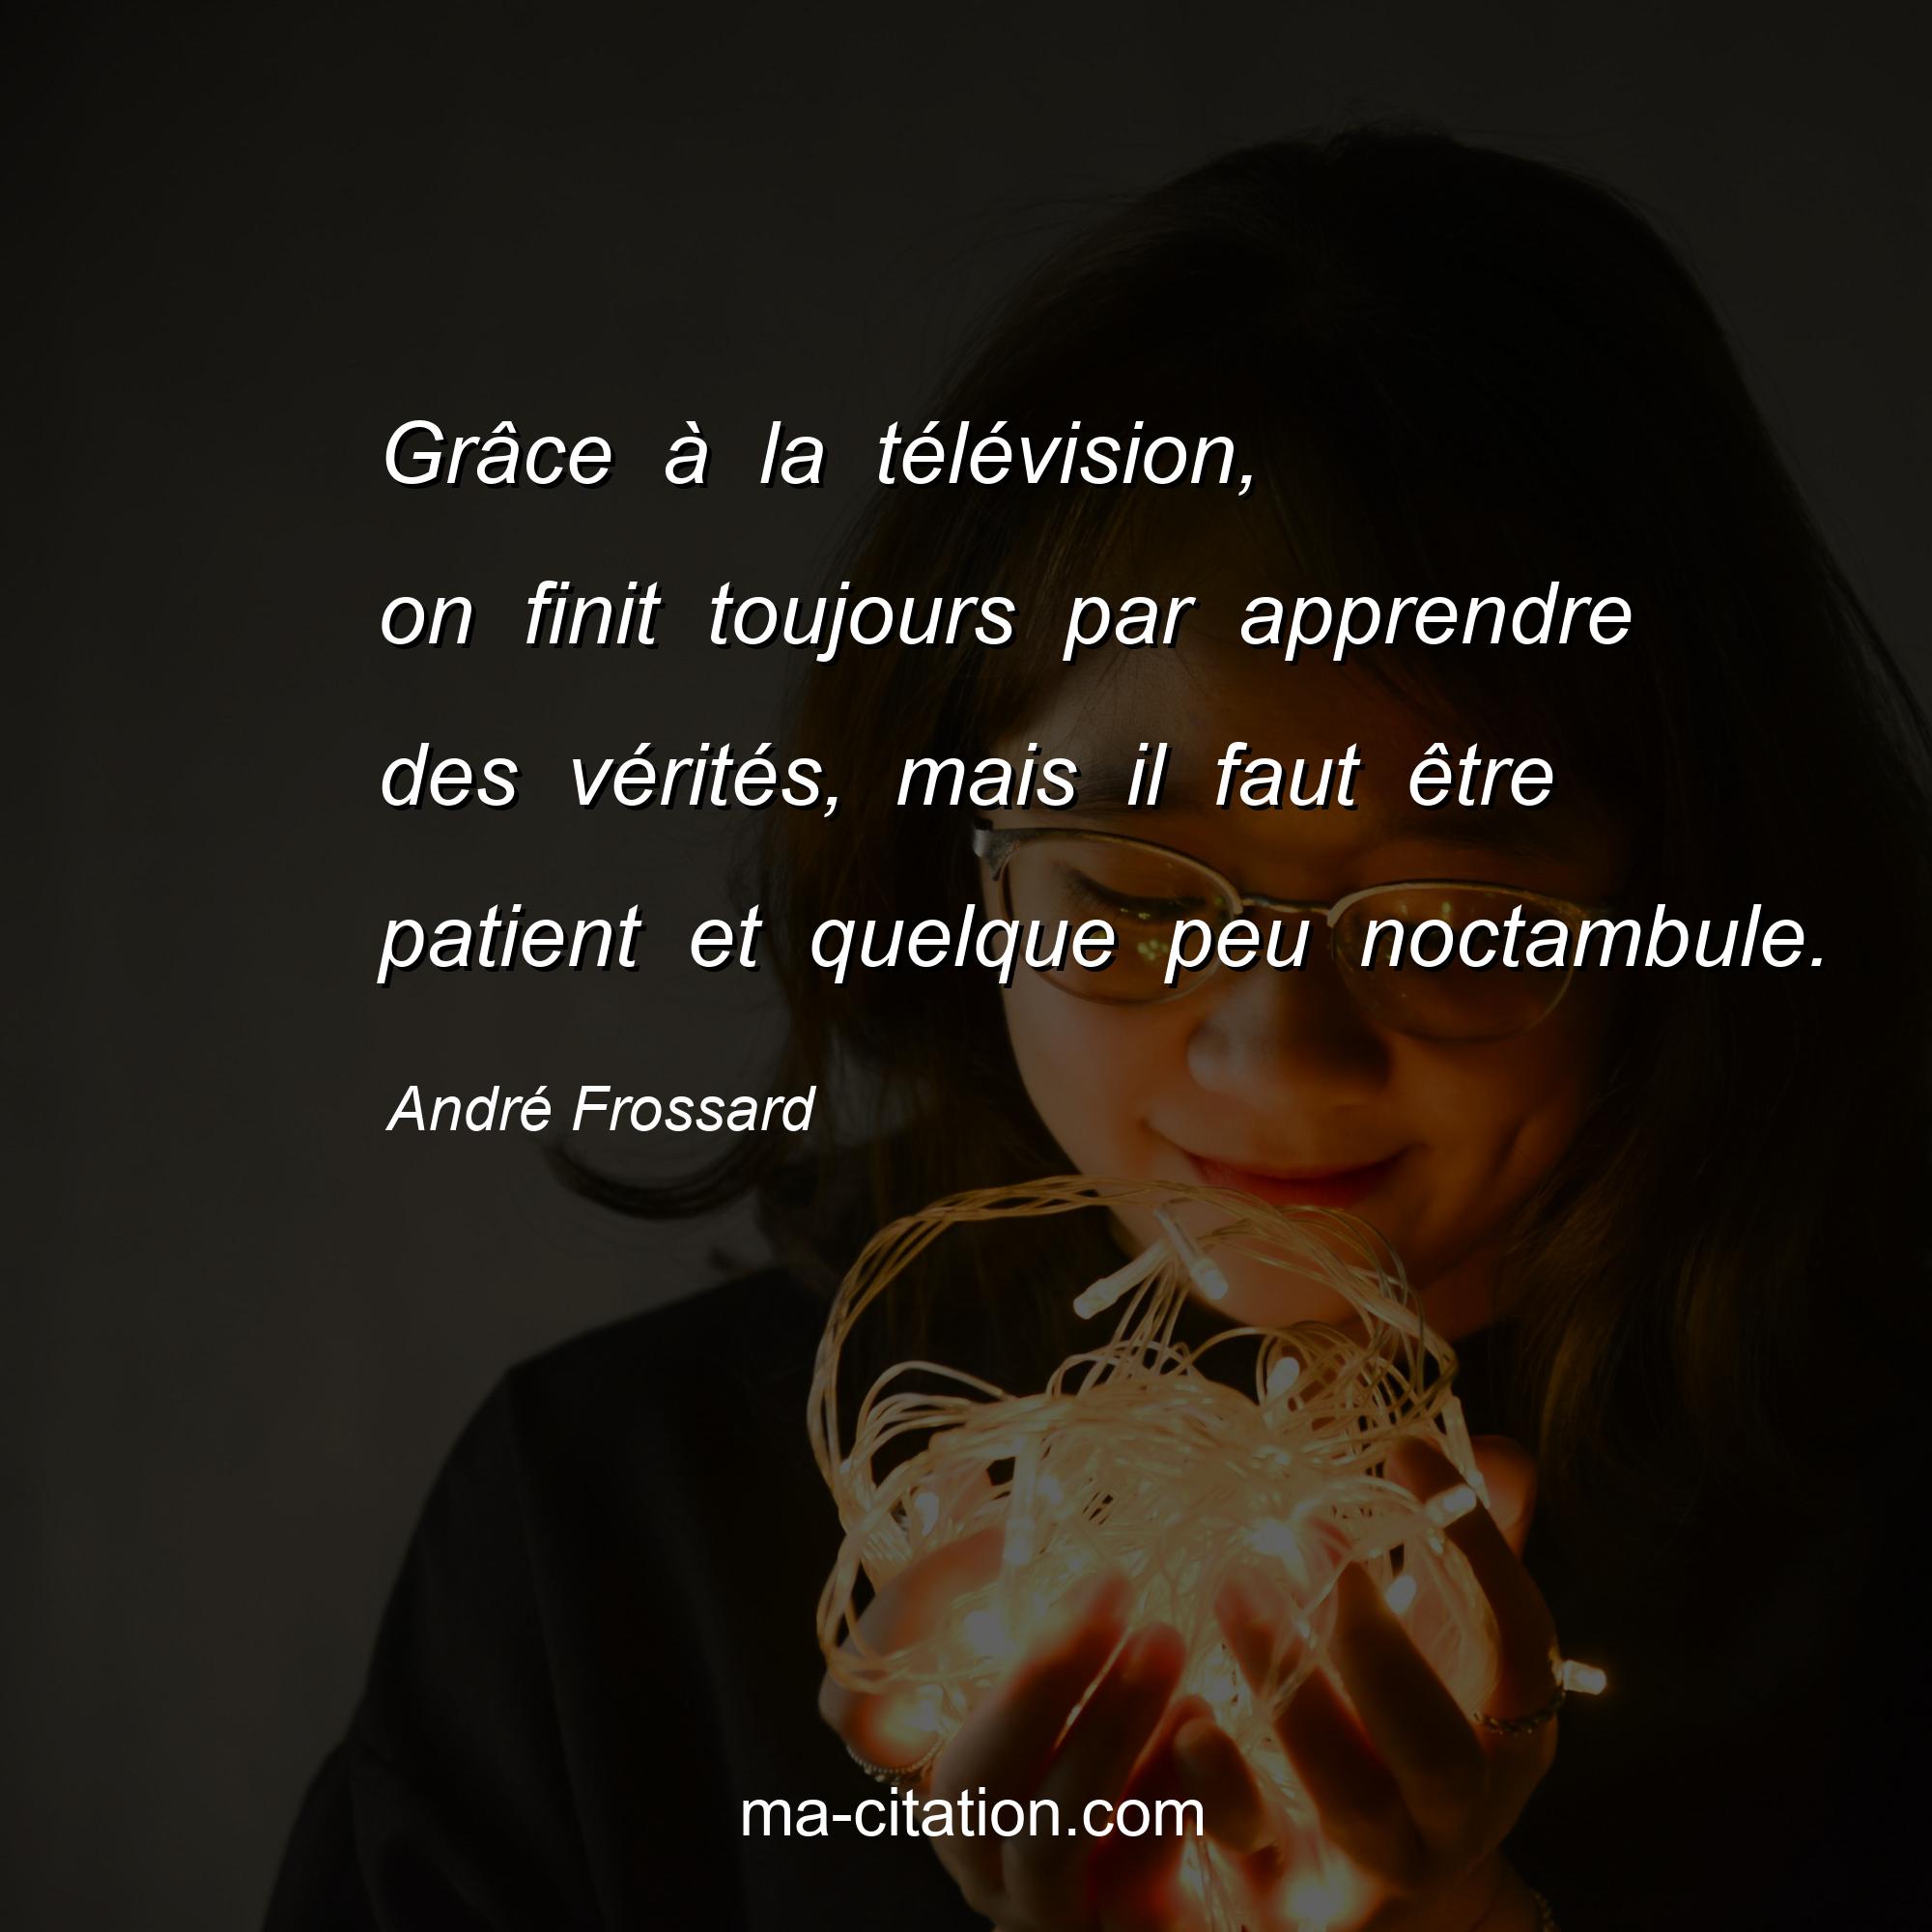 André Frossard : Grâce à la télévision, on finit toujours par apprendre des vérités, mais il faut être patient et quelque peu noctambule.